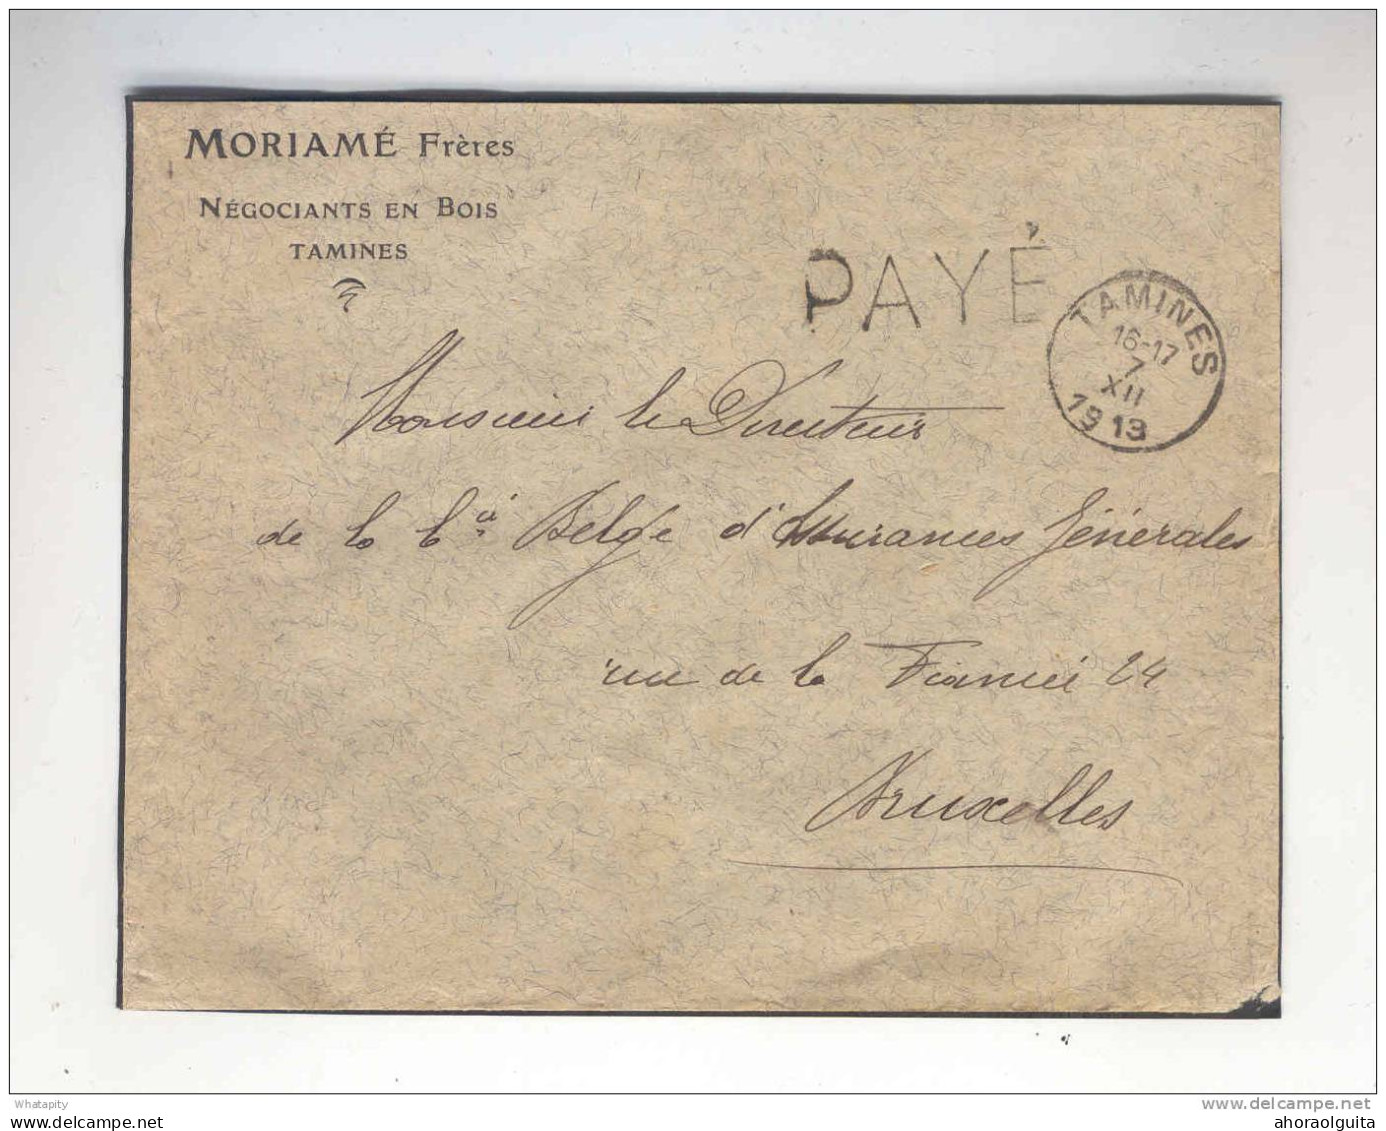 Lettre Cachet Belge TAMINES 7 XII13 (Erreur Pour 18) Griffe PAYE - Entete Moriame Frères , Négociants En Bois --  B7/693 - Foruna (1919)